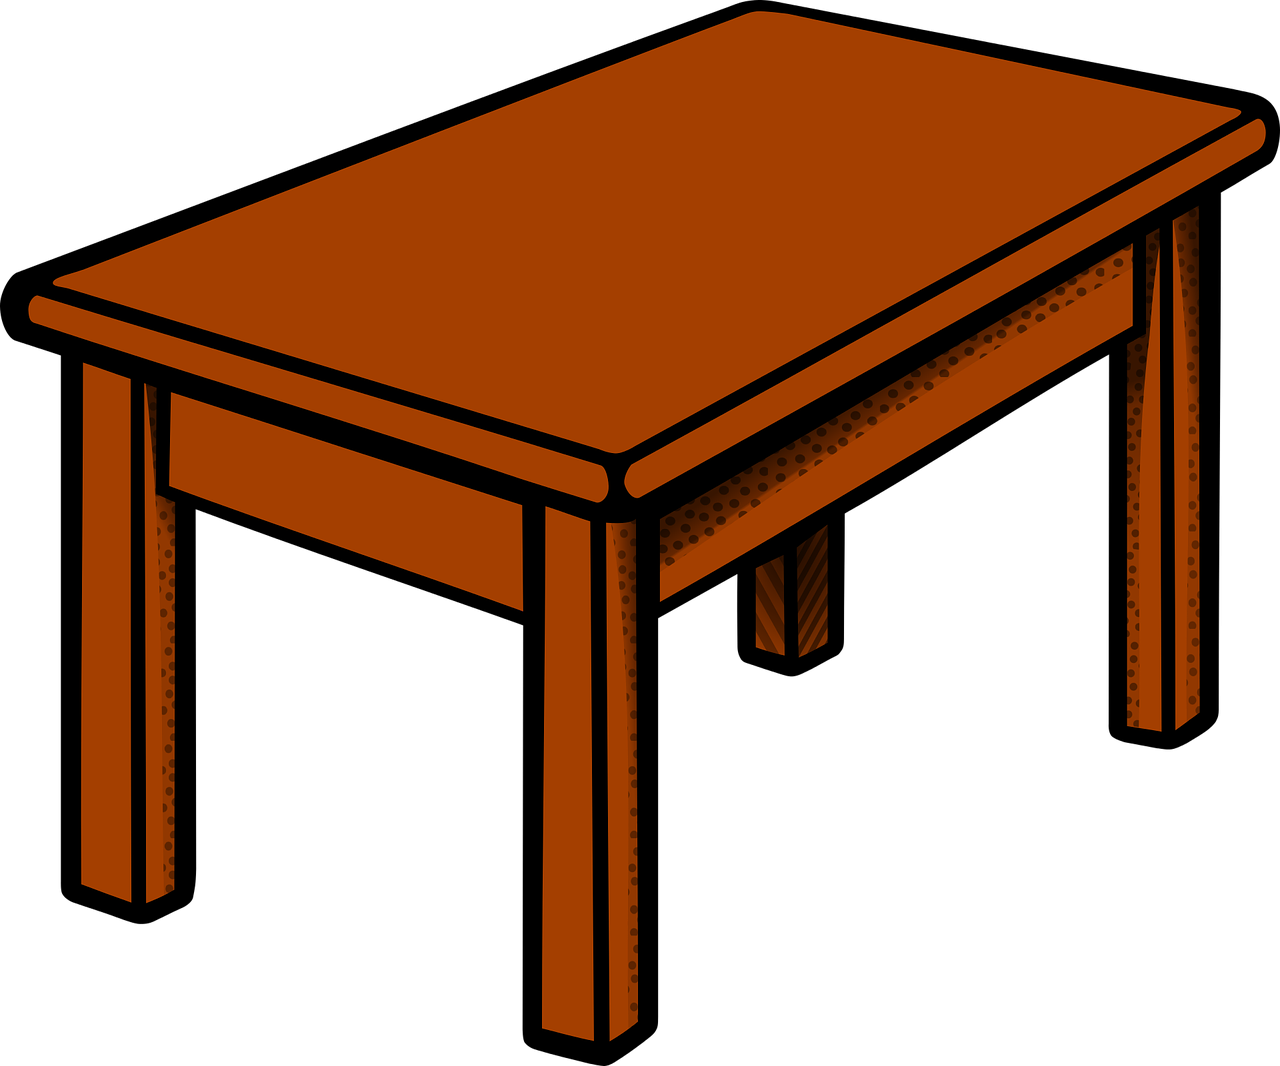 Картинка стол. Стол мультяшный. Стол карточка для детей. Столик нарисованный. Нарисованный деревянный стол.